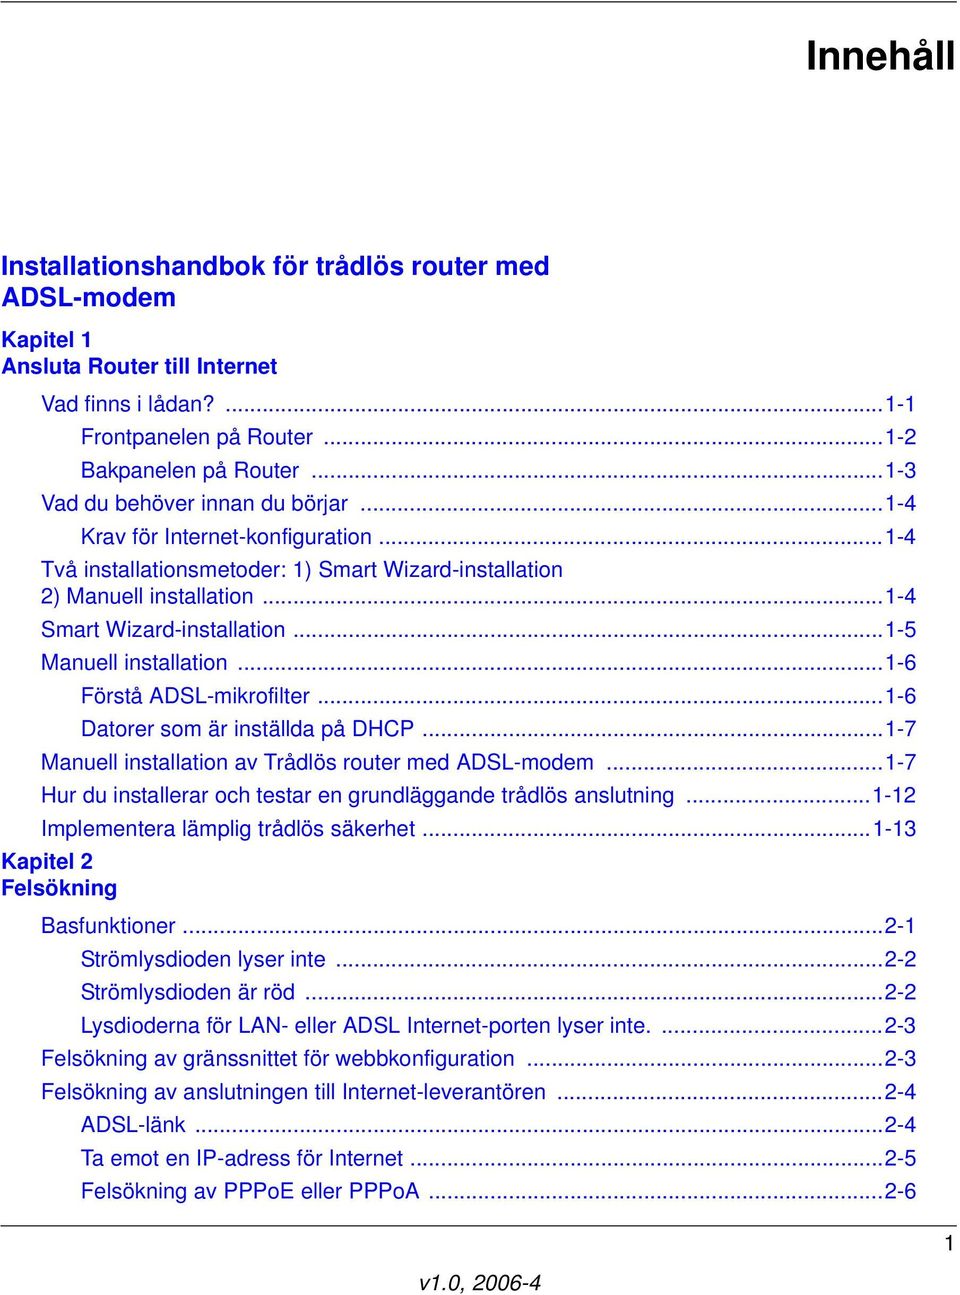 ..1-5 Manuell installation...1-6 Förstå ADSL-mikrofilter...1-6 Datorer som är inställda på DHCP...1-7 Manuell installation av Trådlös router med ADSL-modem.